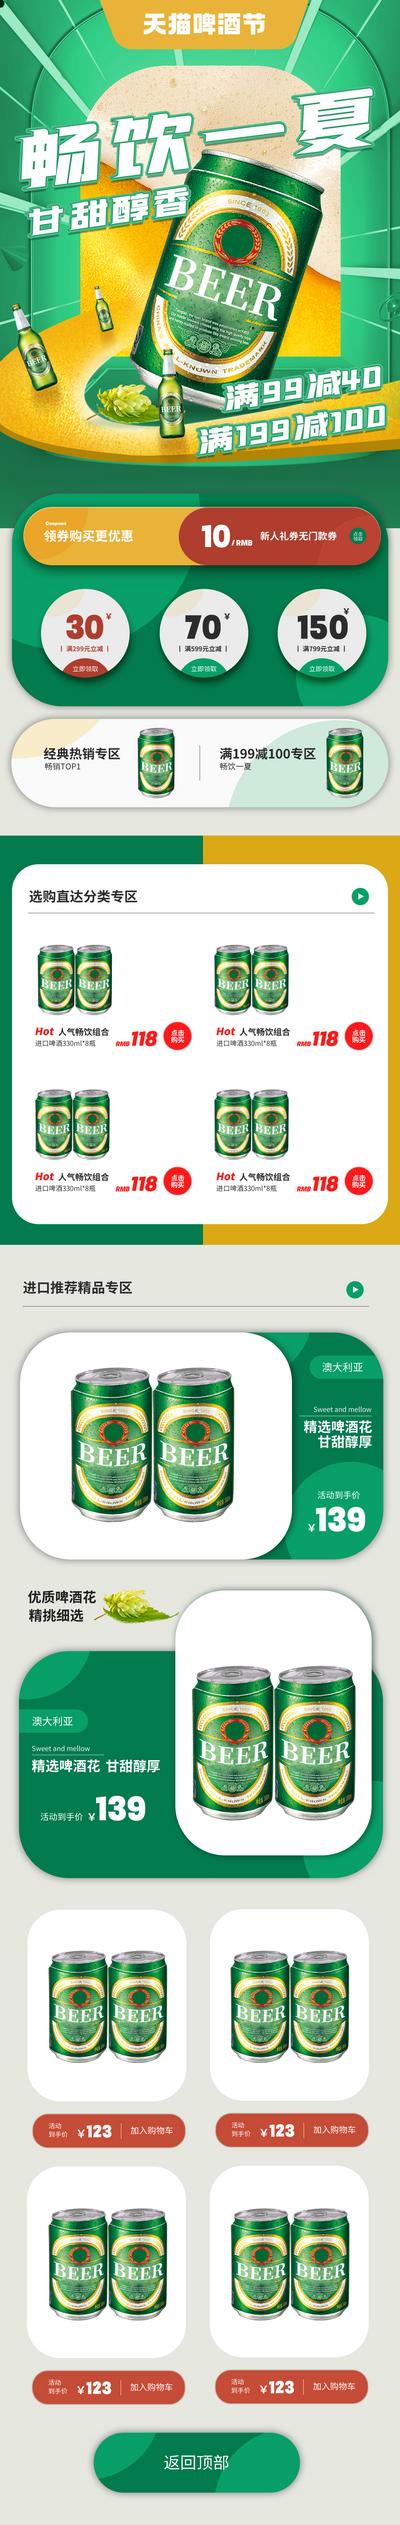 南门网 广告 海报 电商 啤酒 活动 专题